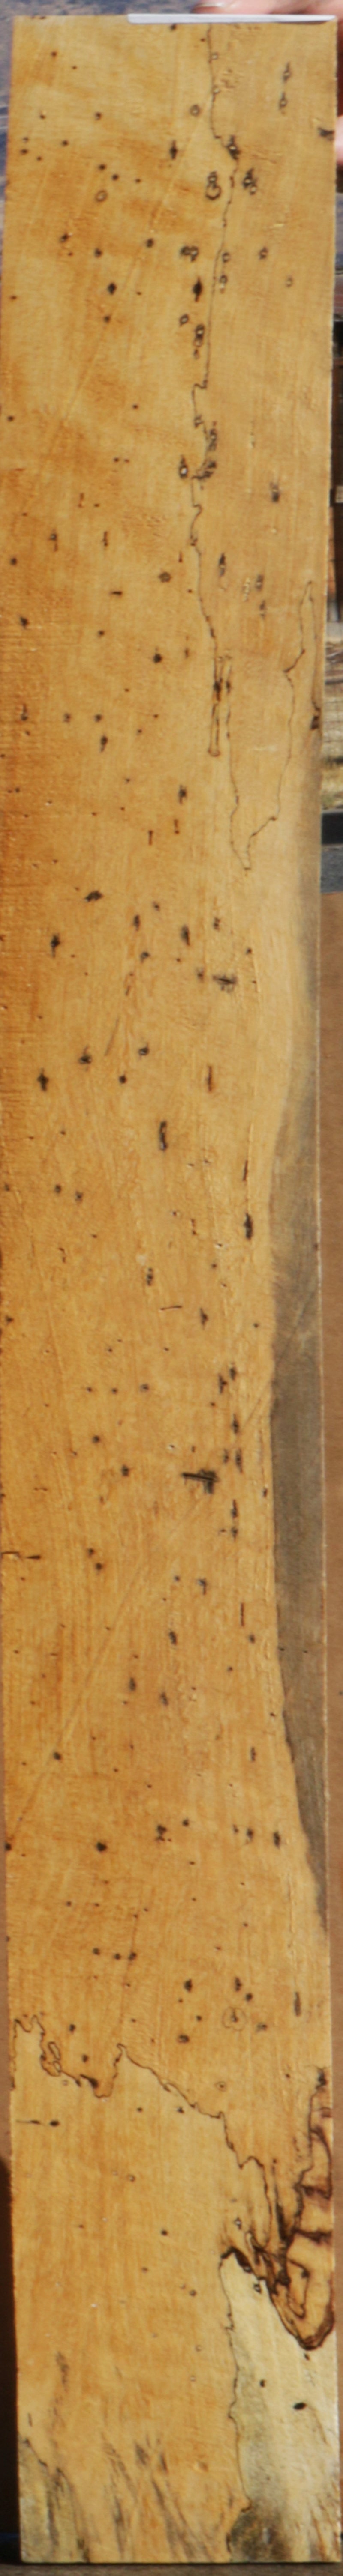 Figured Spalted Tamarind Lumber